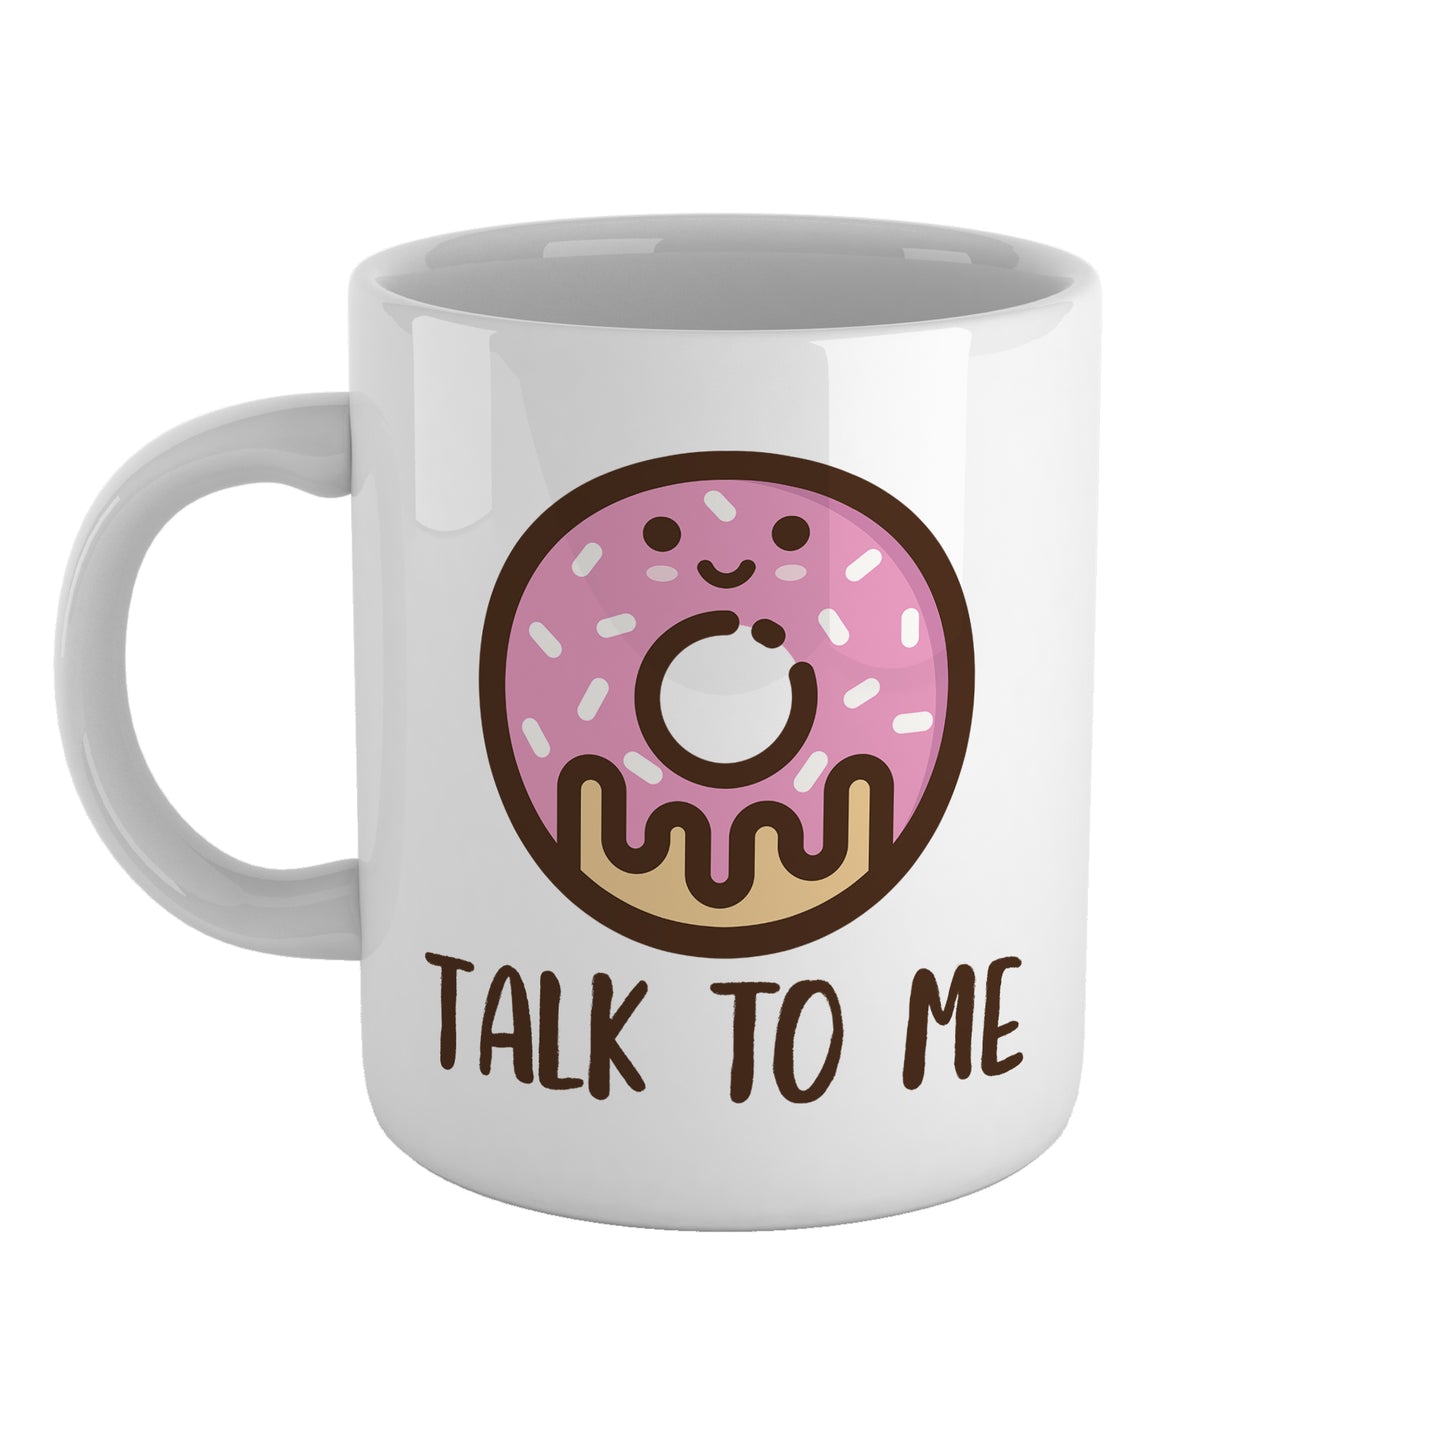 Donut talk to me | Ceramic mug